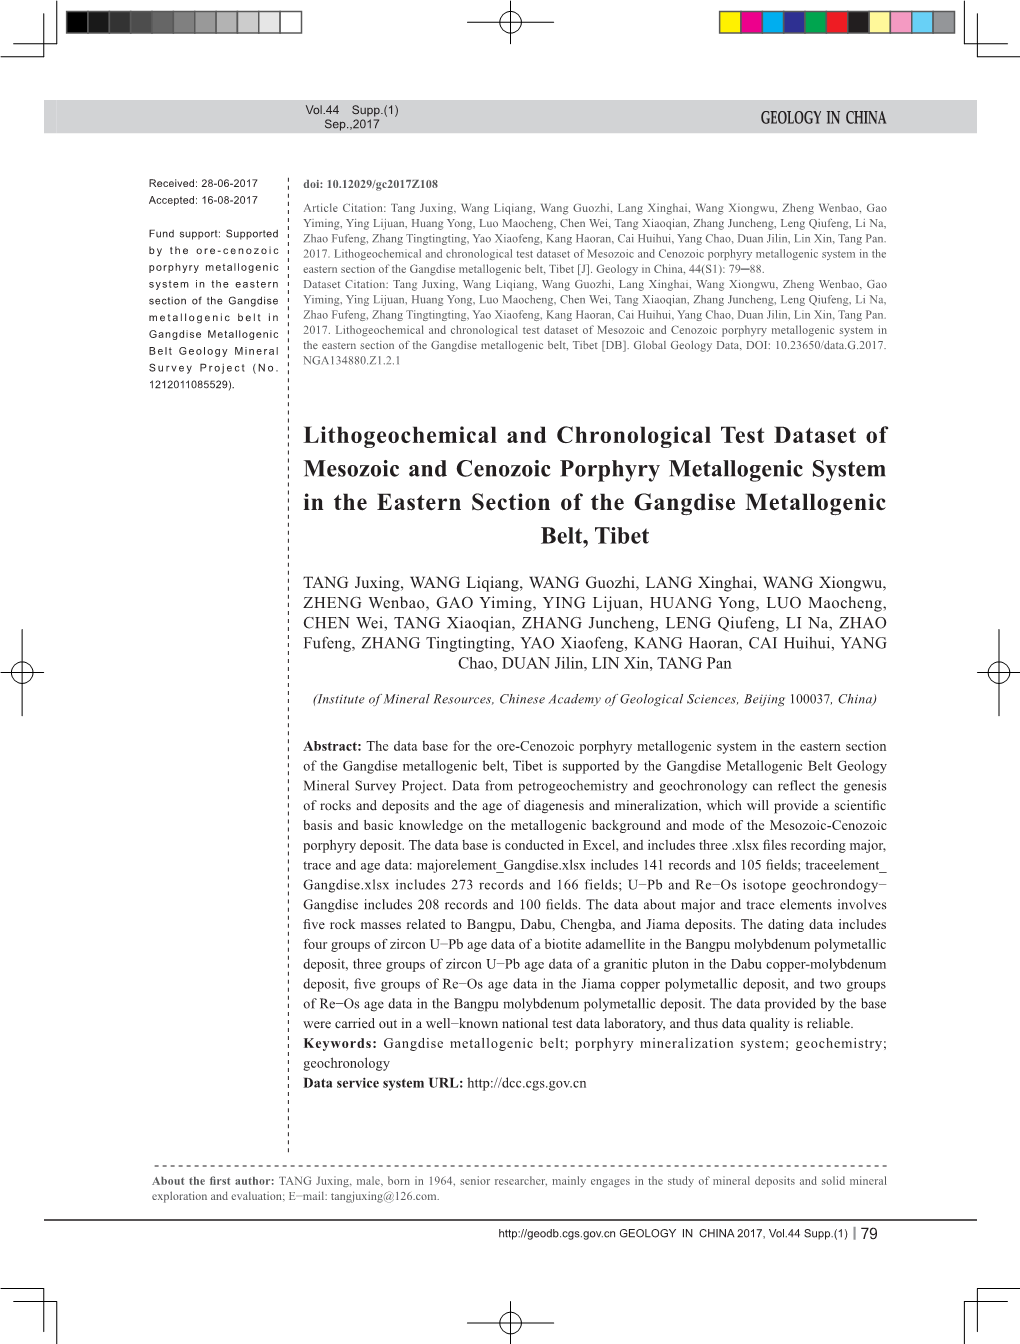 Lithogeochemical and Chronological Test Dataset of Mesozoic And